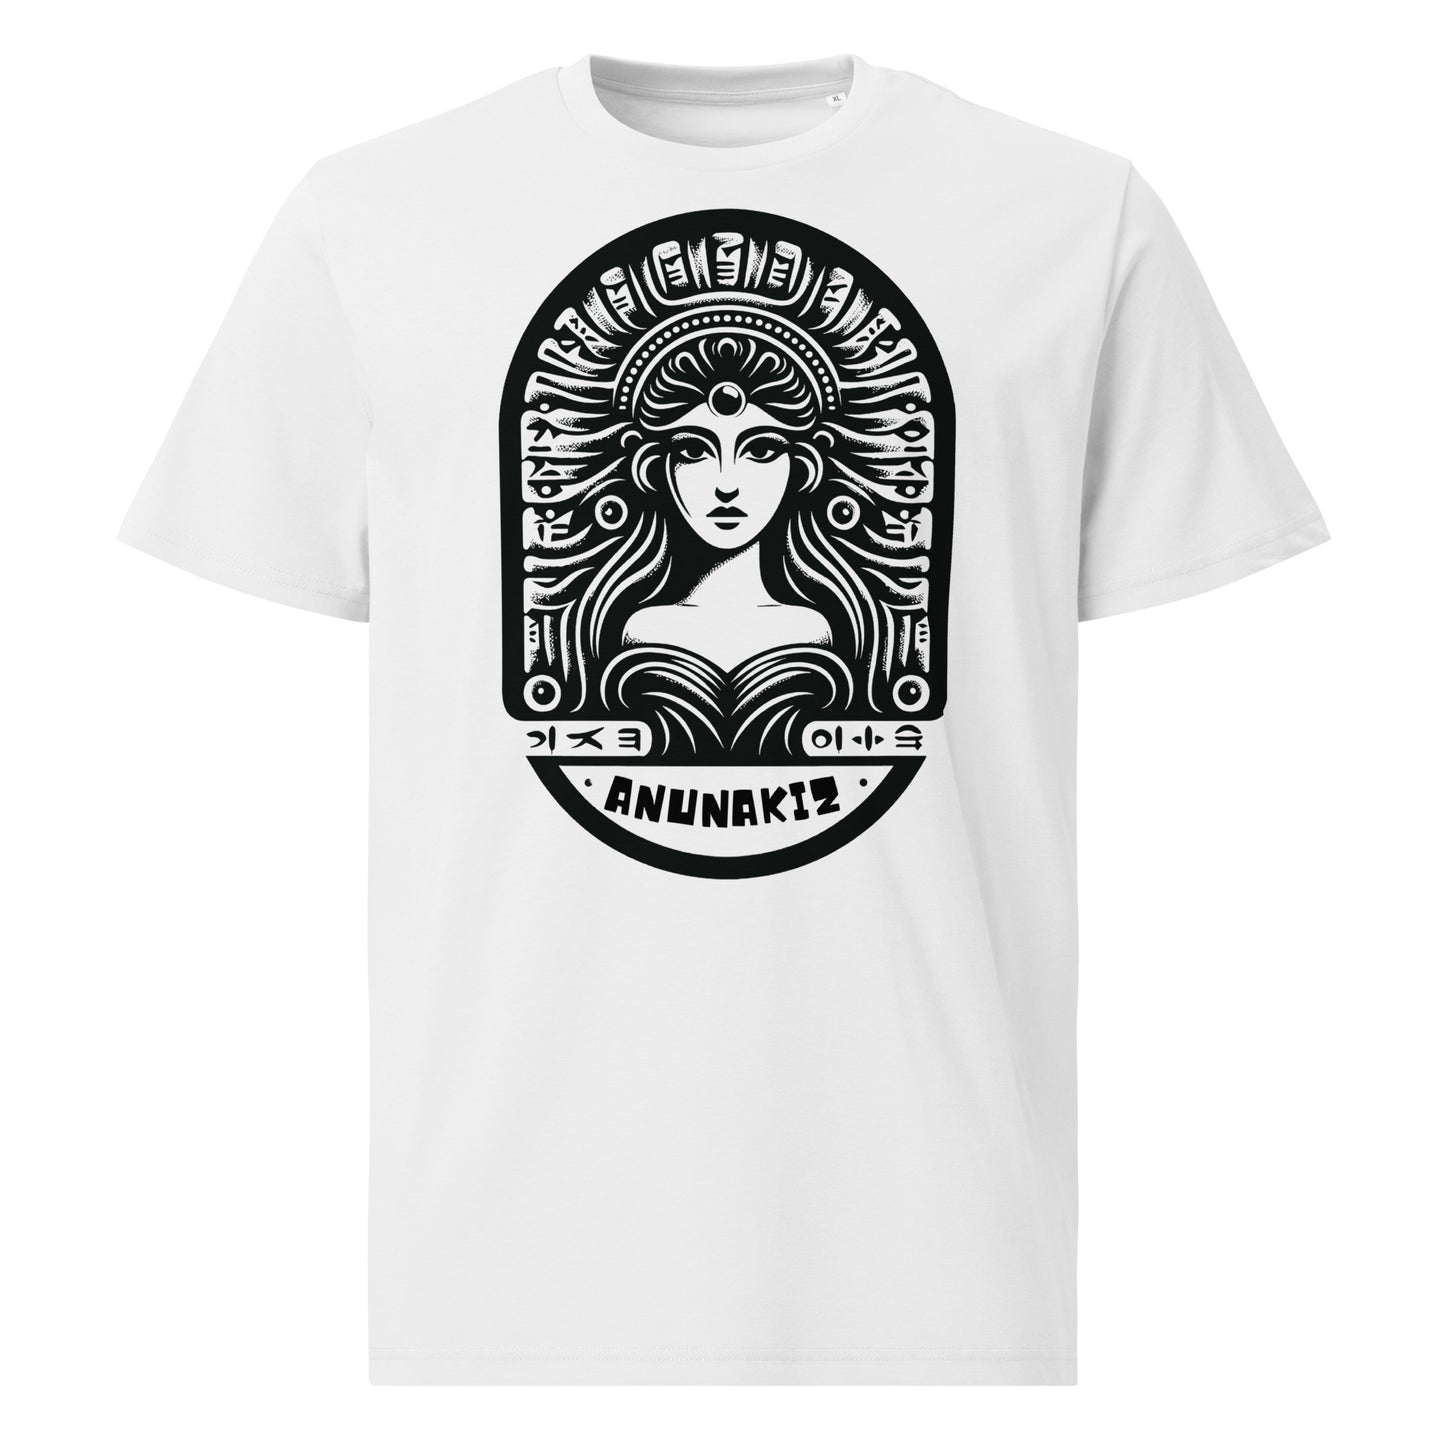 Anunakiz Sumerian Goddess Logo Unisex organic cotton t-shirt